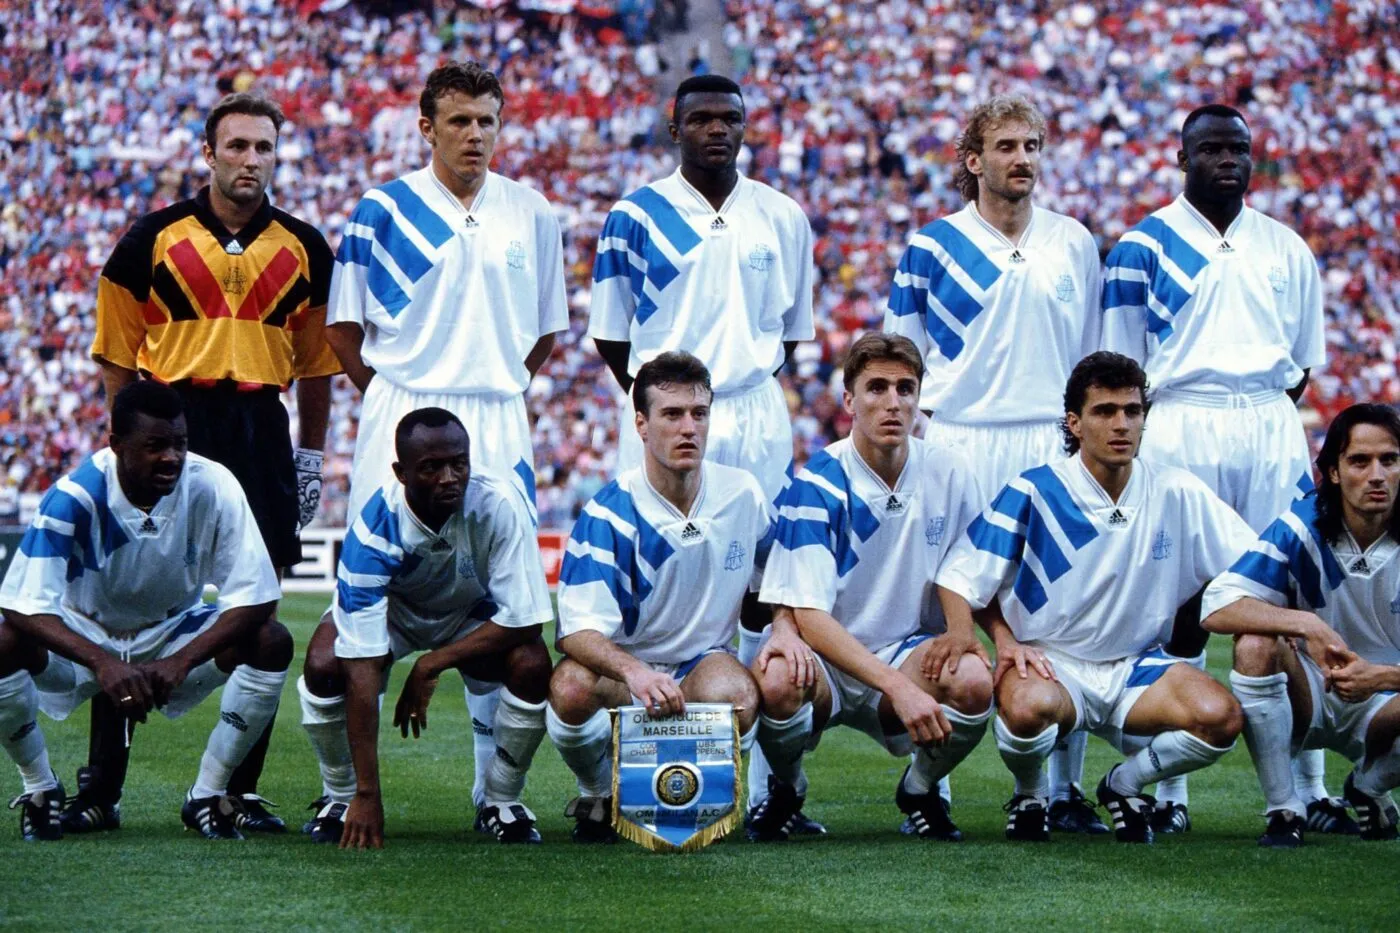 Equipe de Marseille - 26.05.1993 - Marseille / Milan AC - Finale Coupe d'Europe des Clubs Champions - Munich